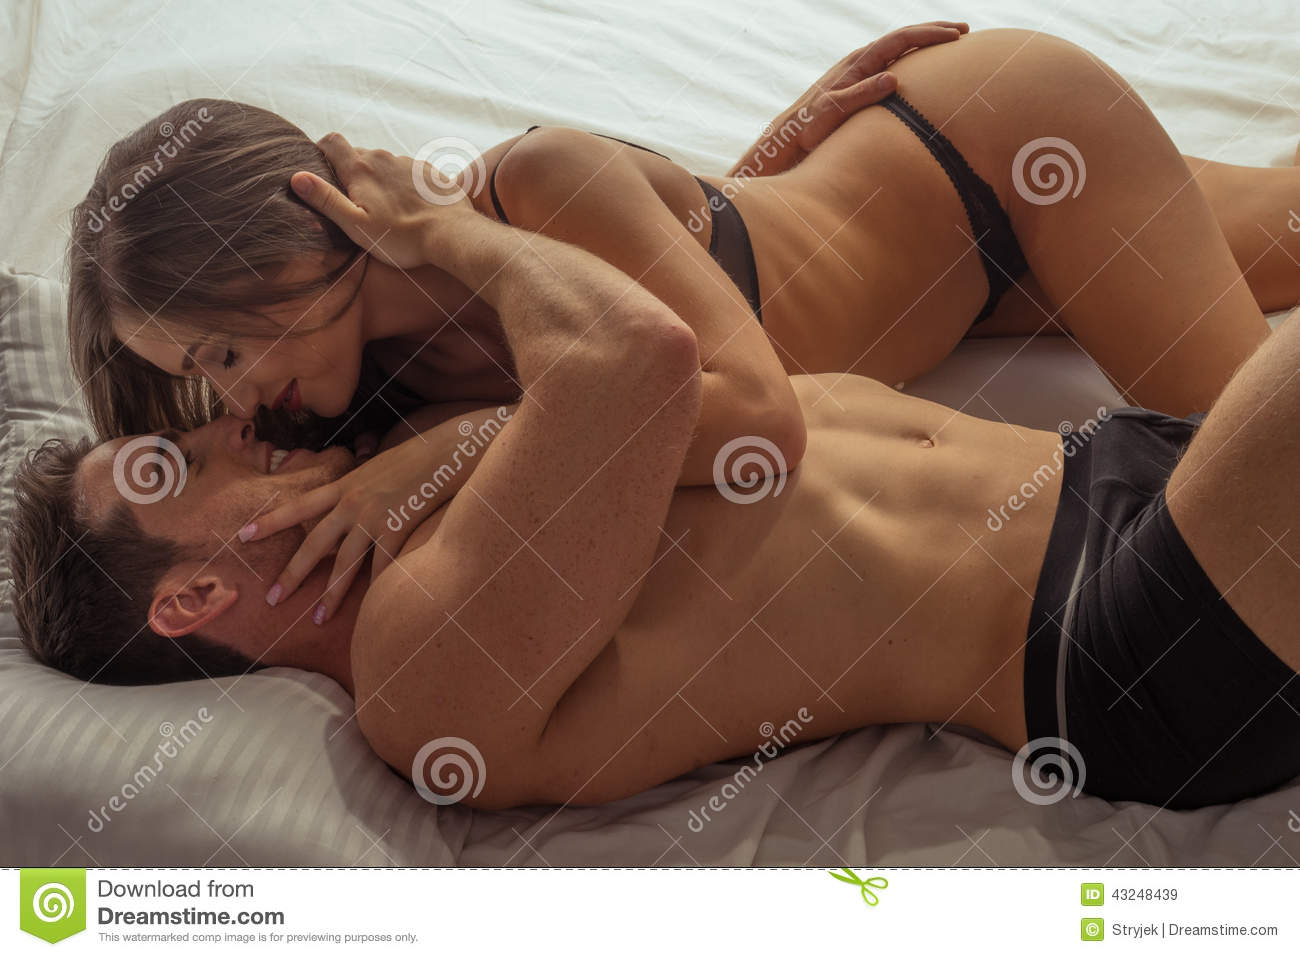 California reccomend Sexy hot love couple photo download